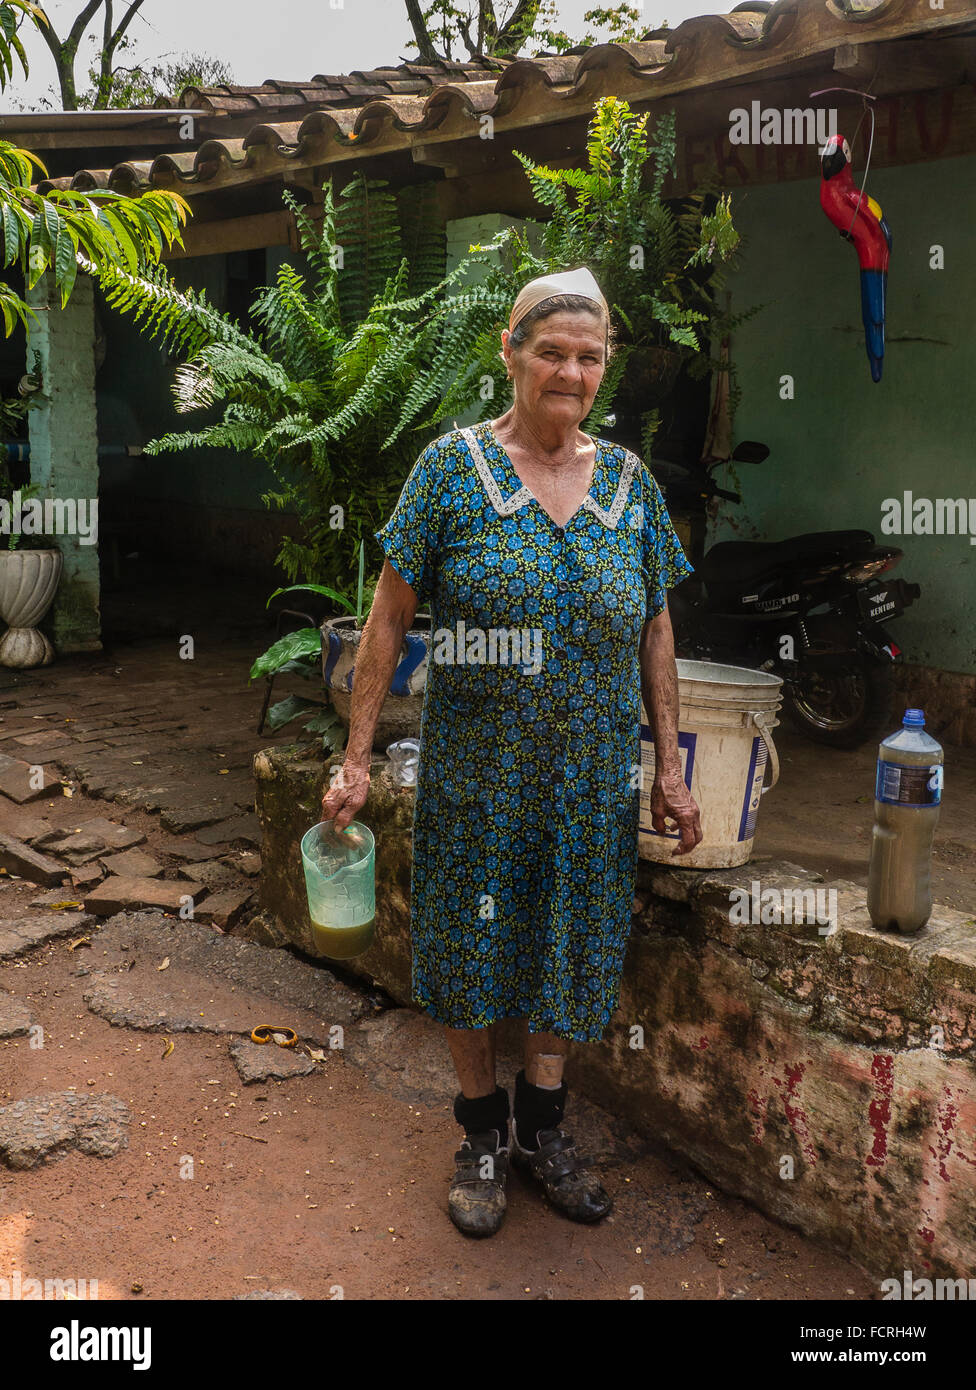 Un vieillard productrice au Paraguay qui produit mosto helado, une boisson locale à base de jus de canne à sucre. Banque D'Images